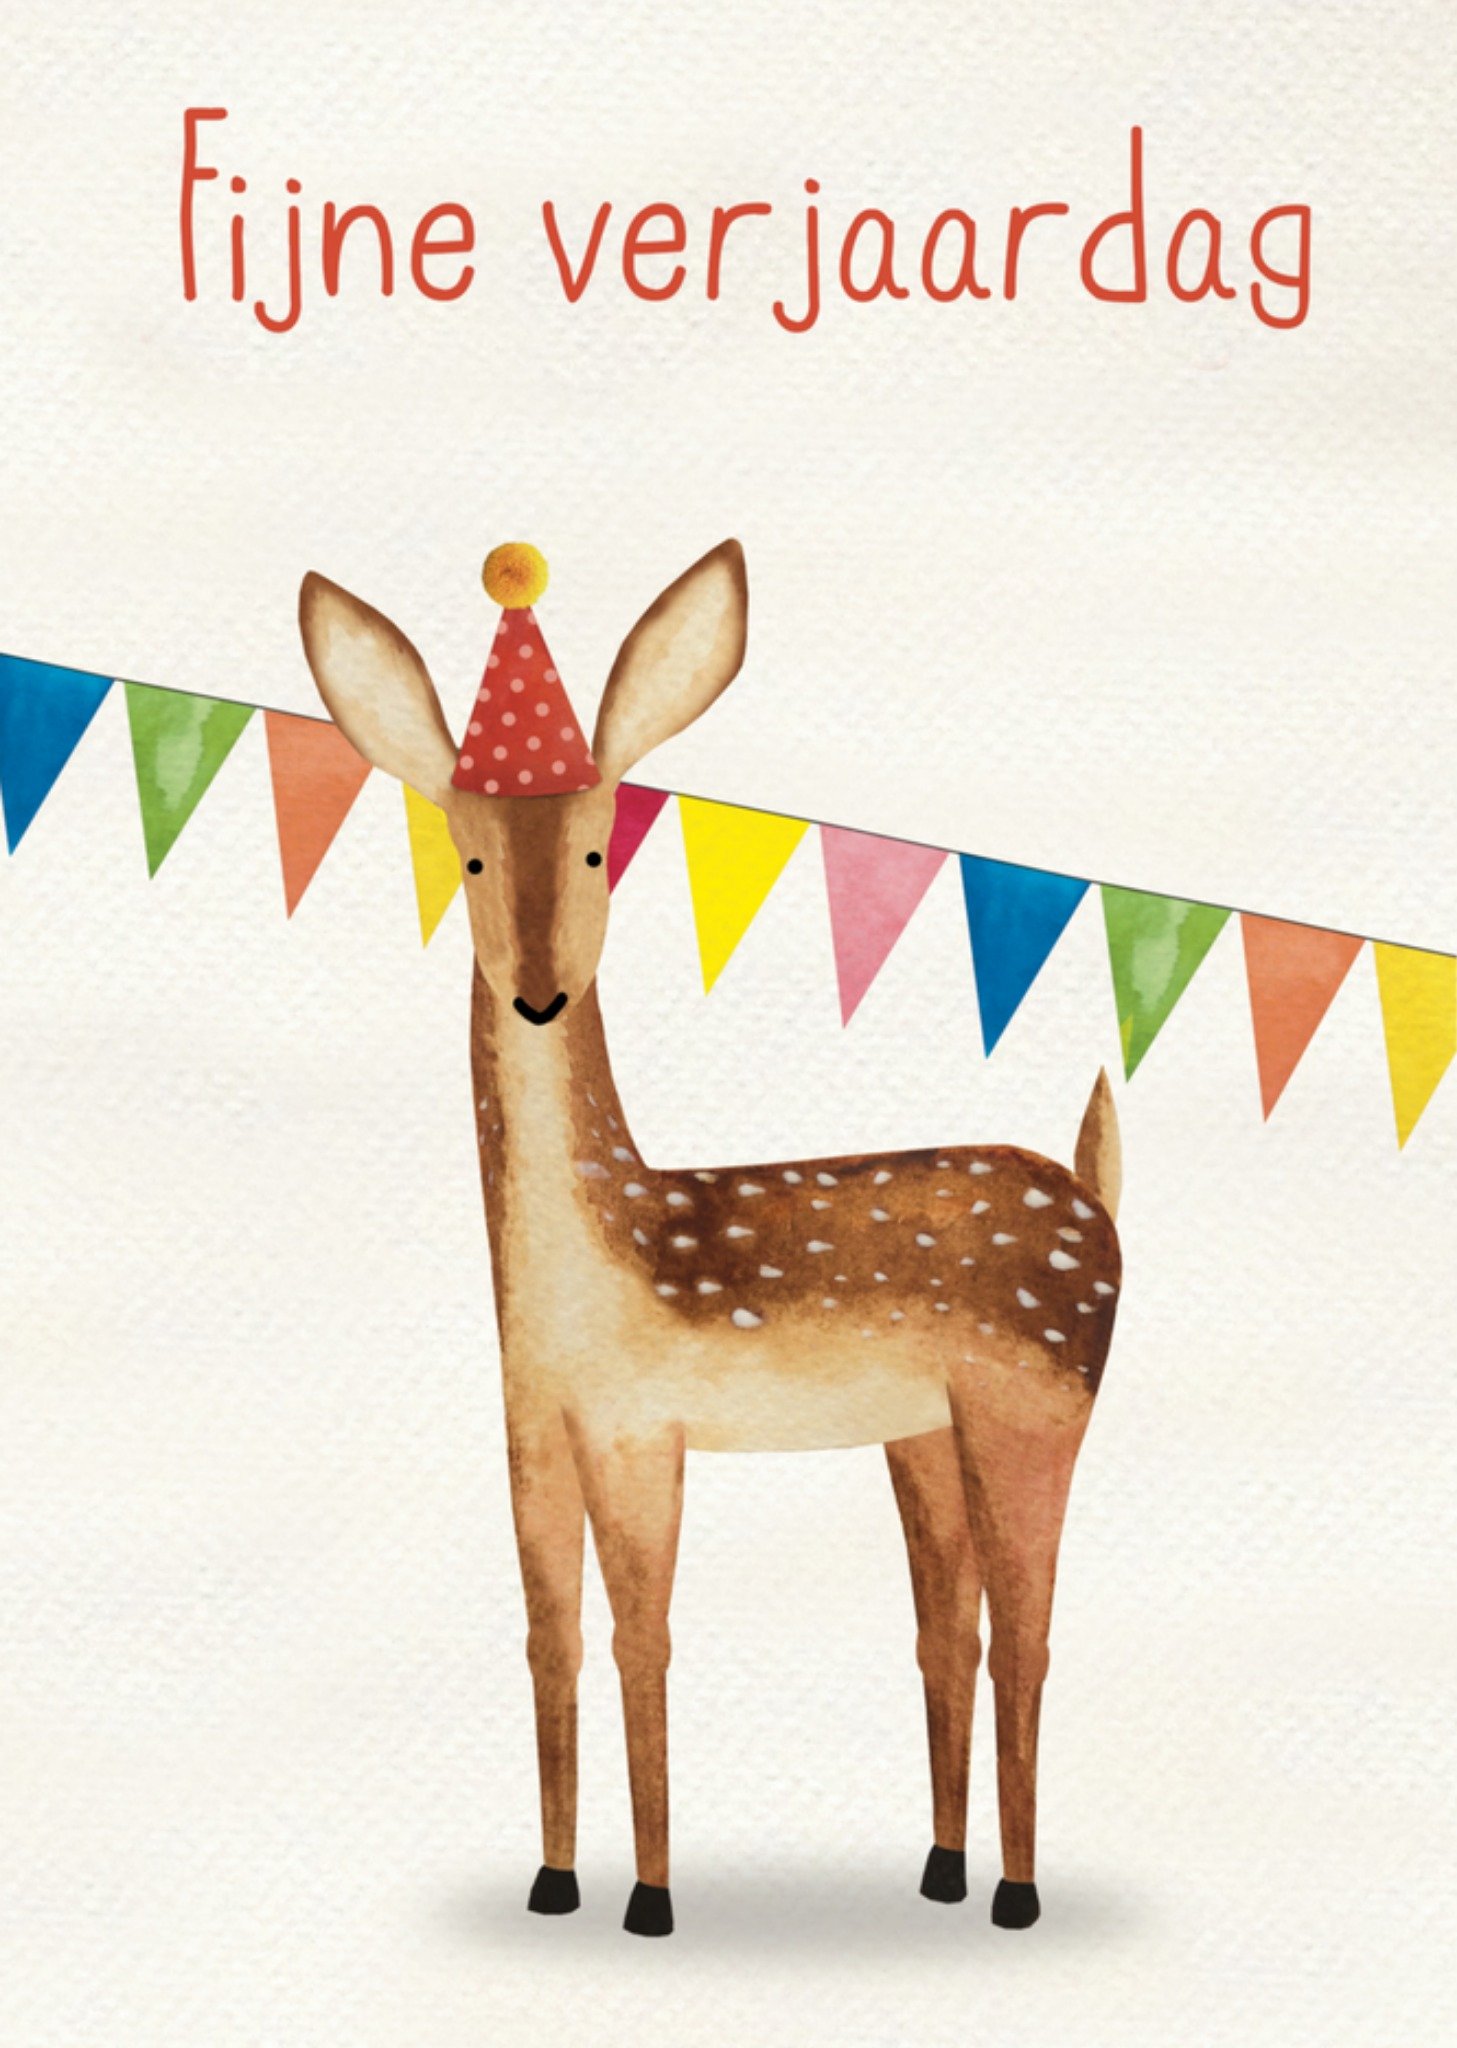 All the best cards - Verjaardagskaart - hertje